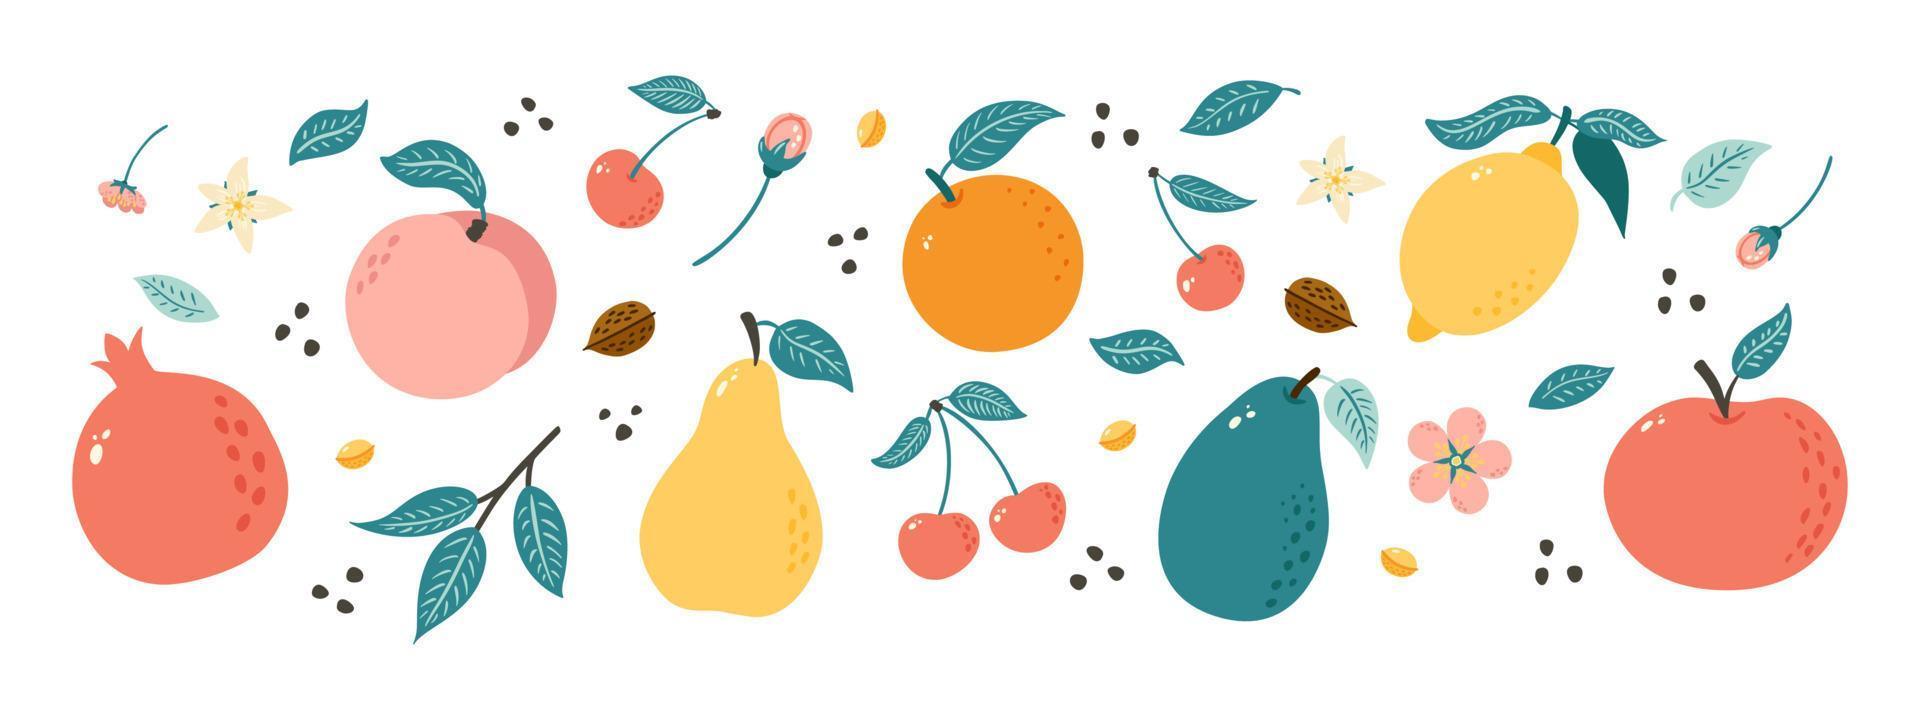 handgetekende vruchten. verzameling fruitillustraties in doodle-stijl voor poster, banner, achtergrond, marktetiket, logo, sticker, briefkaart, menu, ontwerp en decoratie van voedselpakketten vector